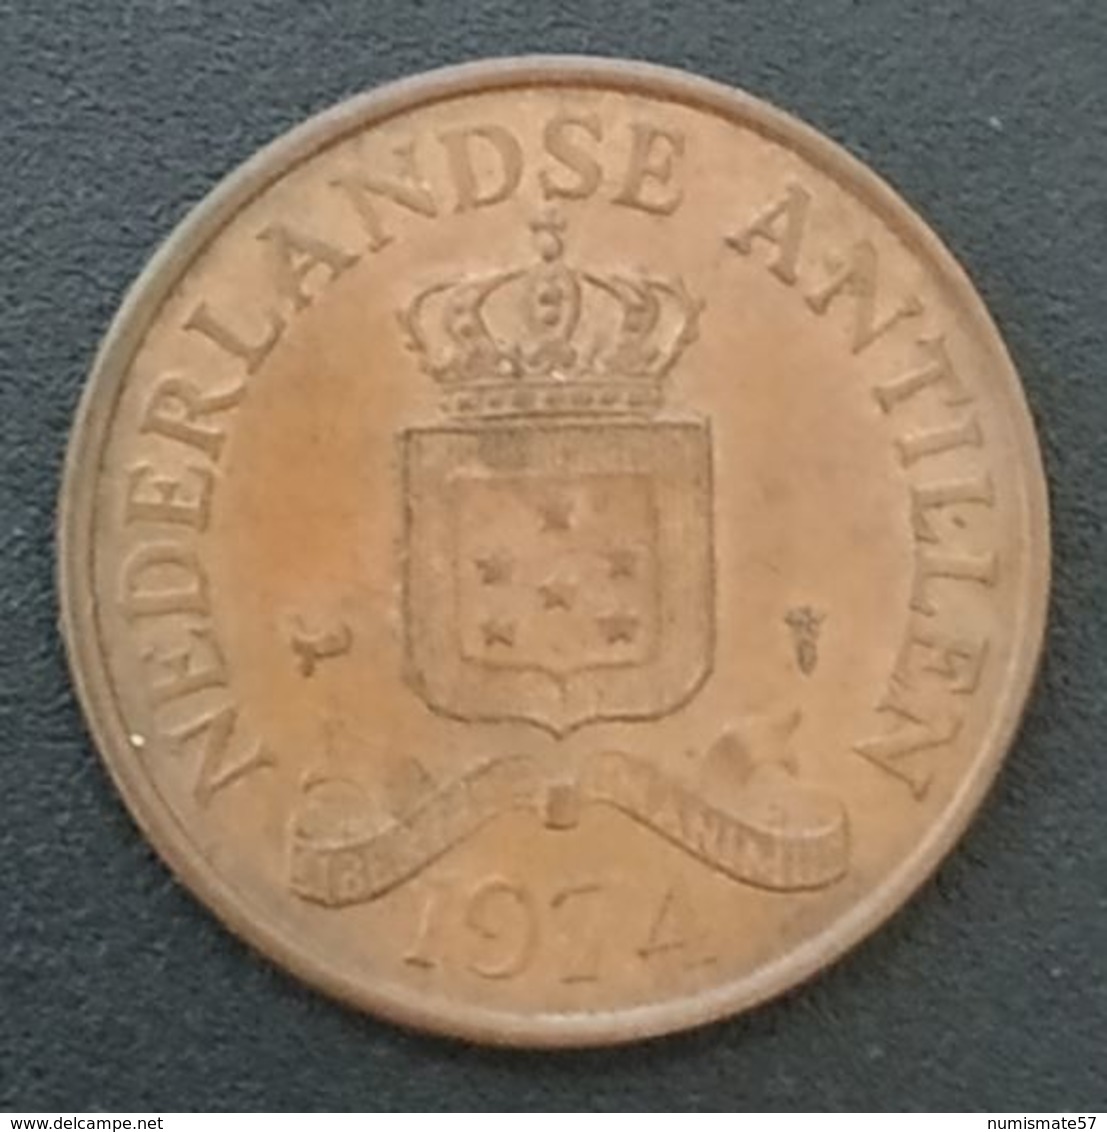 ANTILLES NEERLANDAISES - 2 1/2 - 2 ½ - CENT 1974 - Juliana - KM 9 - NEDERLANDSE ANTILLEN - Netherlands Antilles